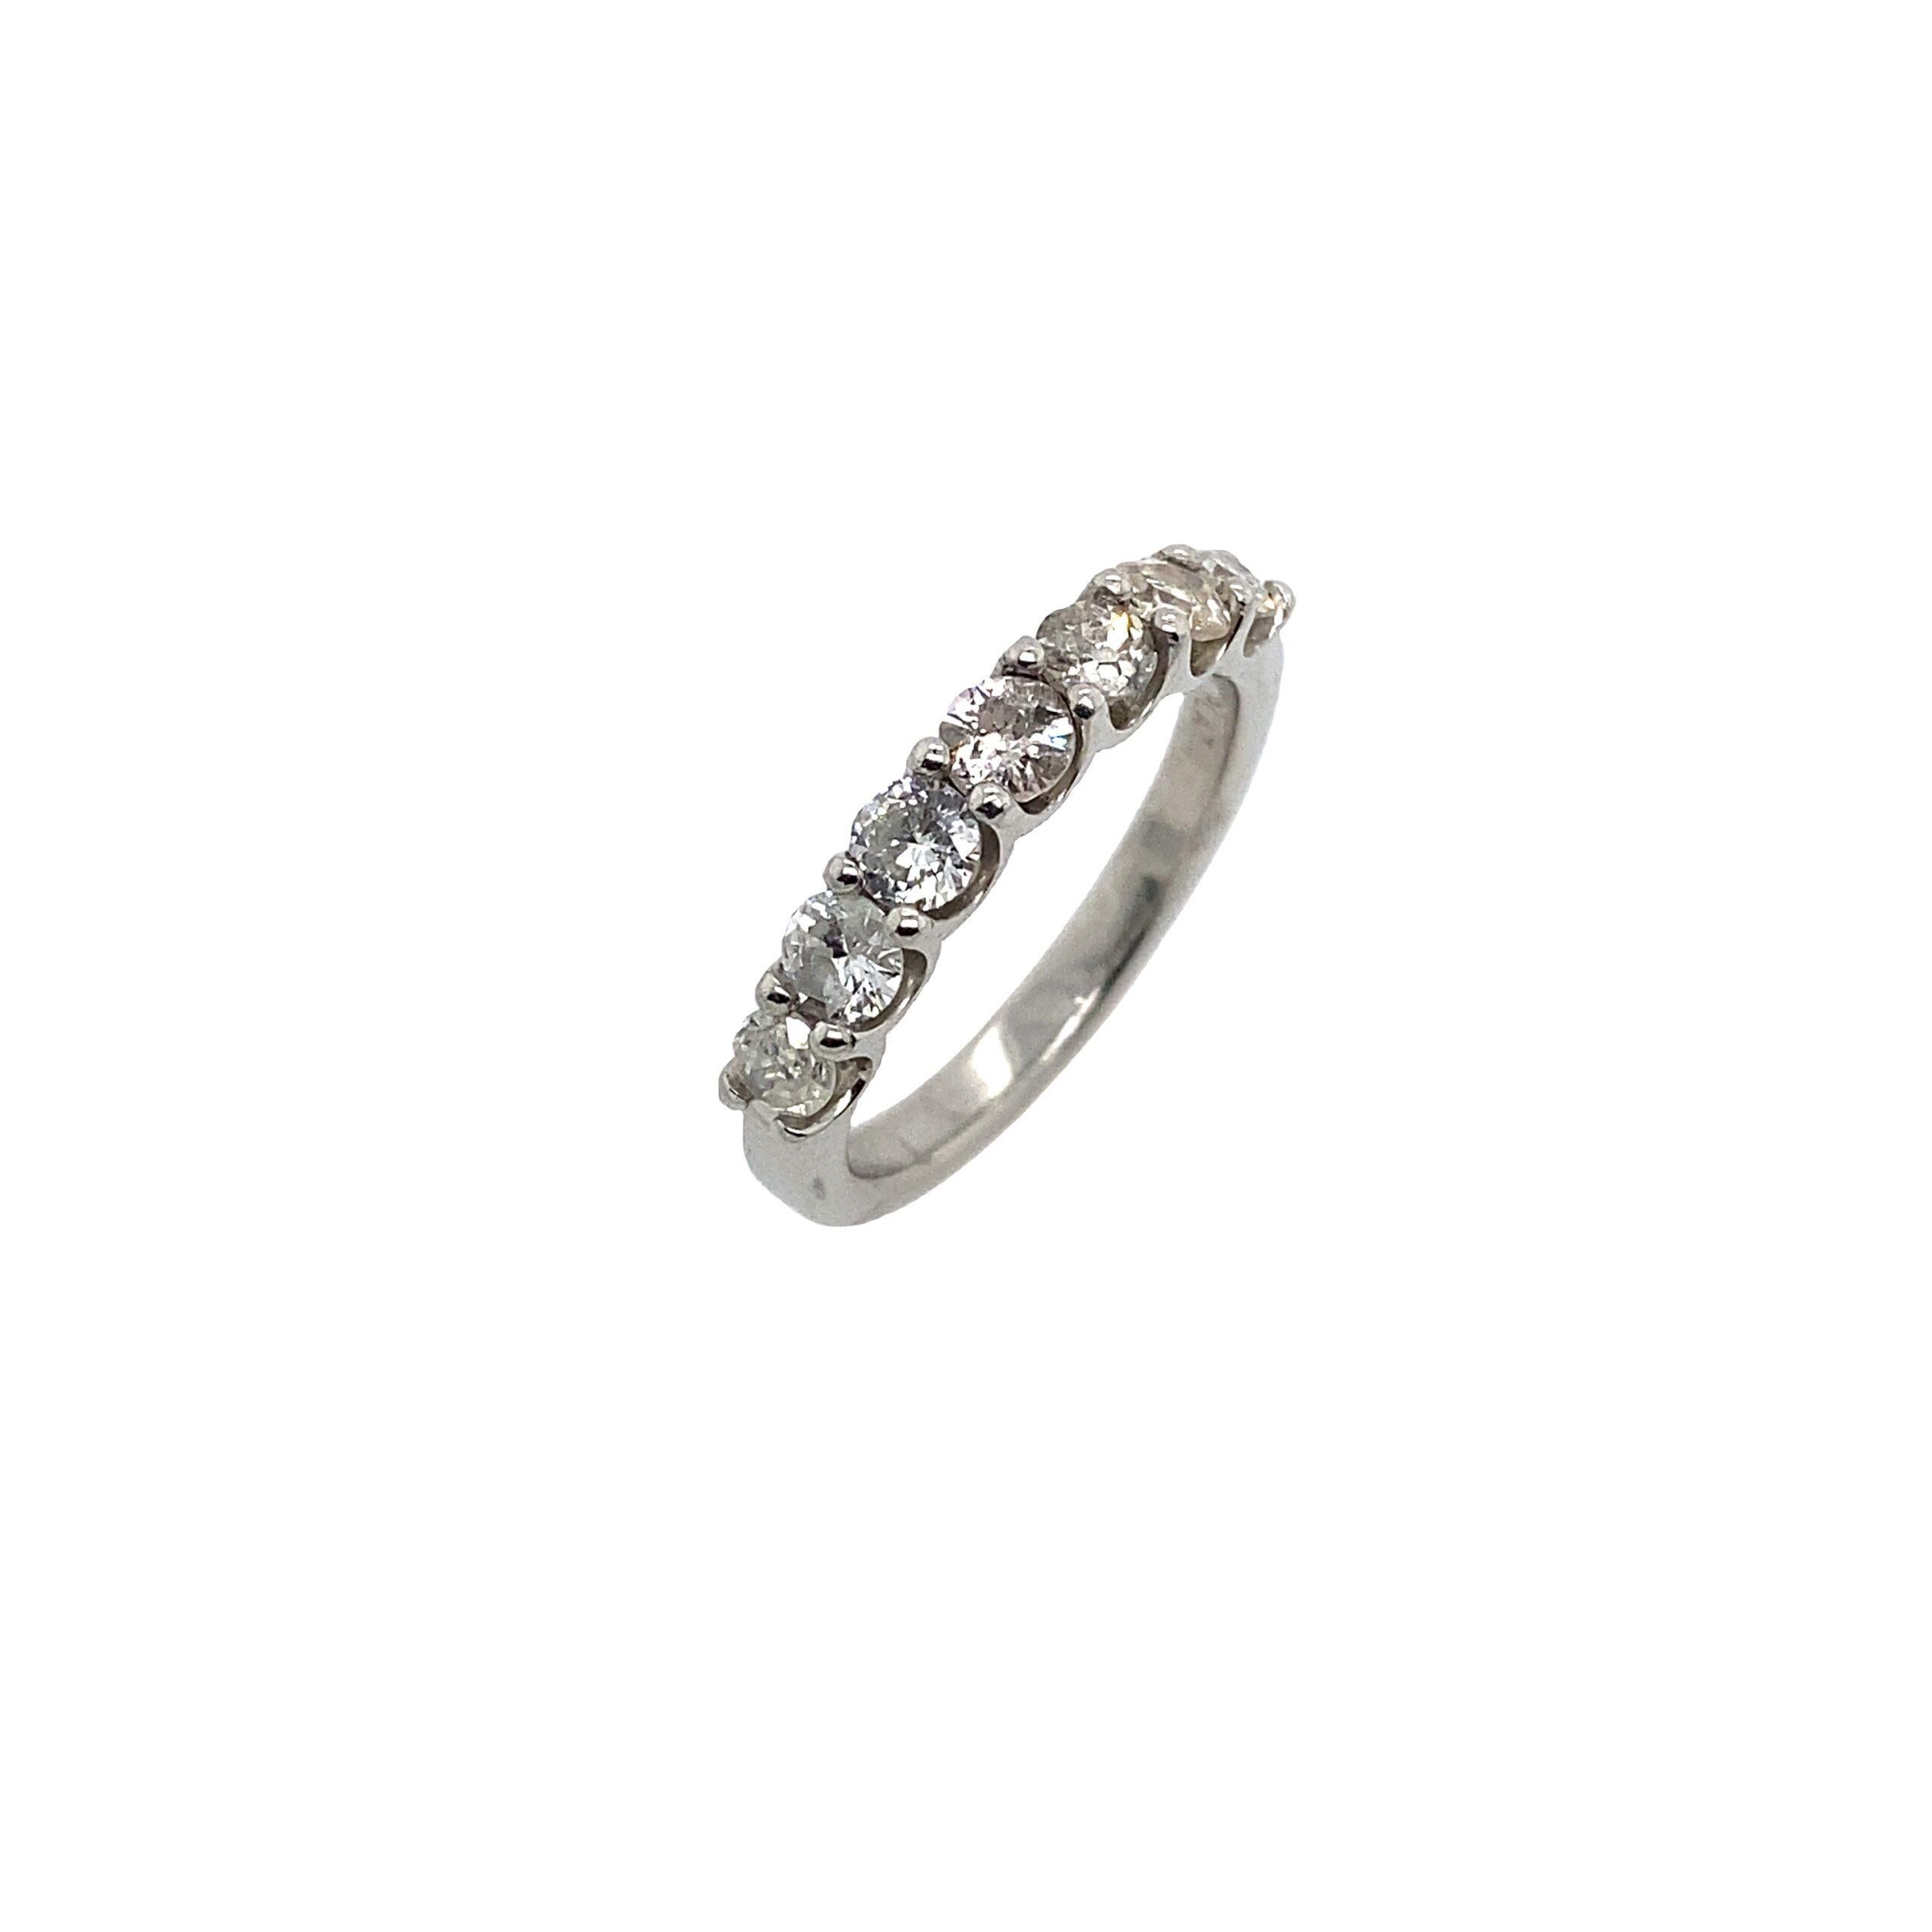 New Platinum 7 Stein Eternity Band Ring, Set mit 1,20ct von runden Diamanten

Zusätzliche Informationen:
Gesamtgewicht der Diamanten: 1.02ct 
Farbe des Diamanten: H/I
Diamant Reinheit: SI
Insgesamt  Gewicht: 5.7 g
Ring Größe: M 1/2
Breite des